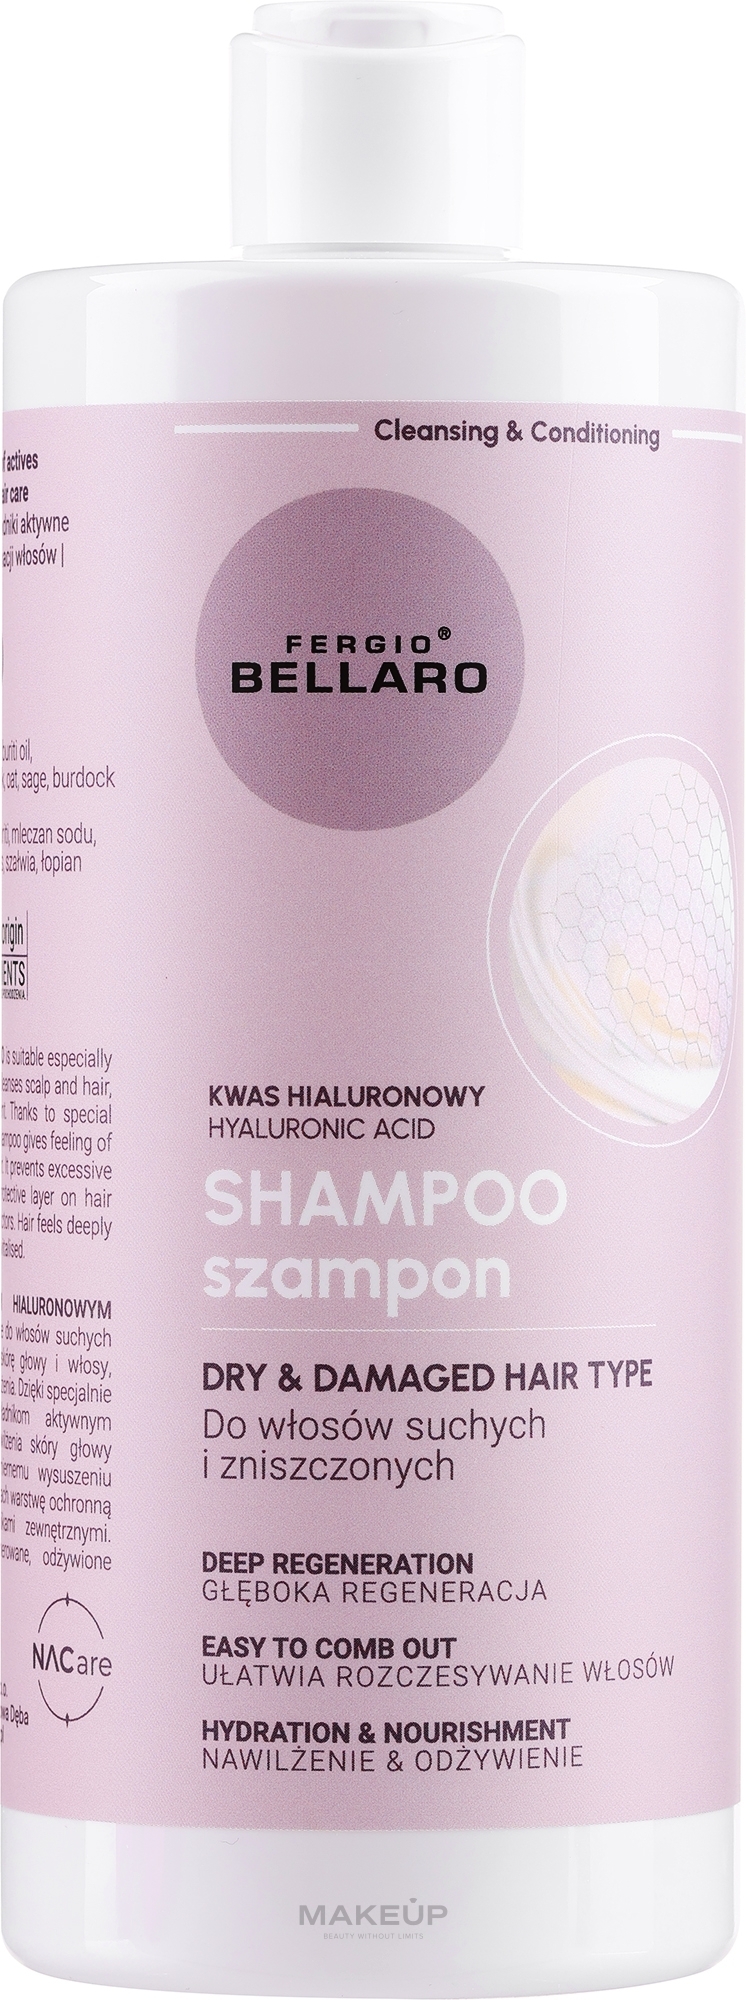 Шампунь для сухих и поврежденных волос с гиалуроновой кислотой - Fergio Bellaro Hyaluronic Acid Dry & Damaged Hair Type Shampoo — фото 500ml